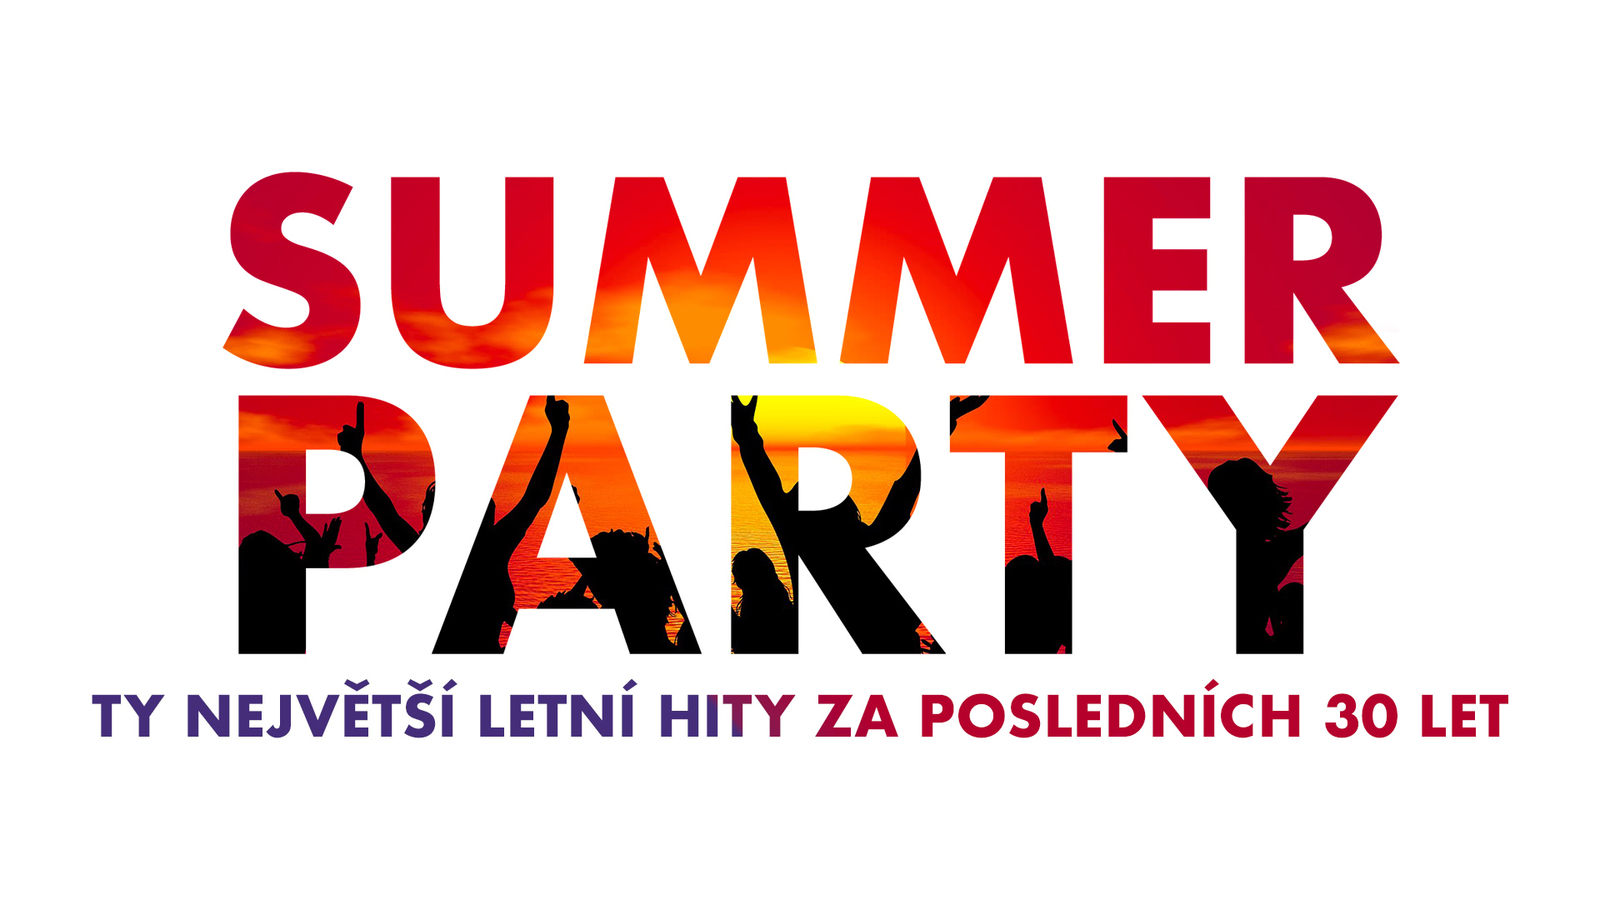 SUMMER PARTY na Hitrádiu North Music! Užijte si největší letní hity za posledních 30 let!